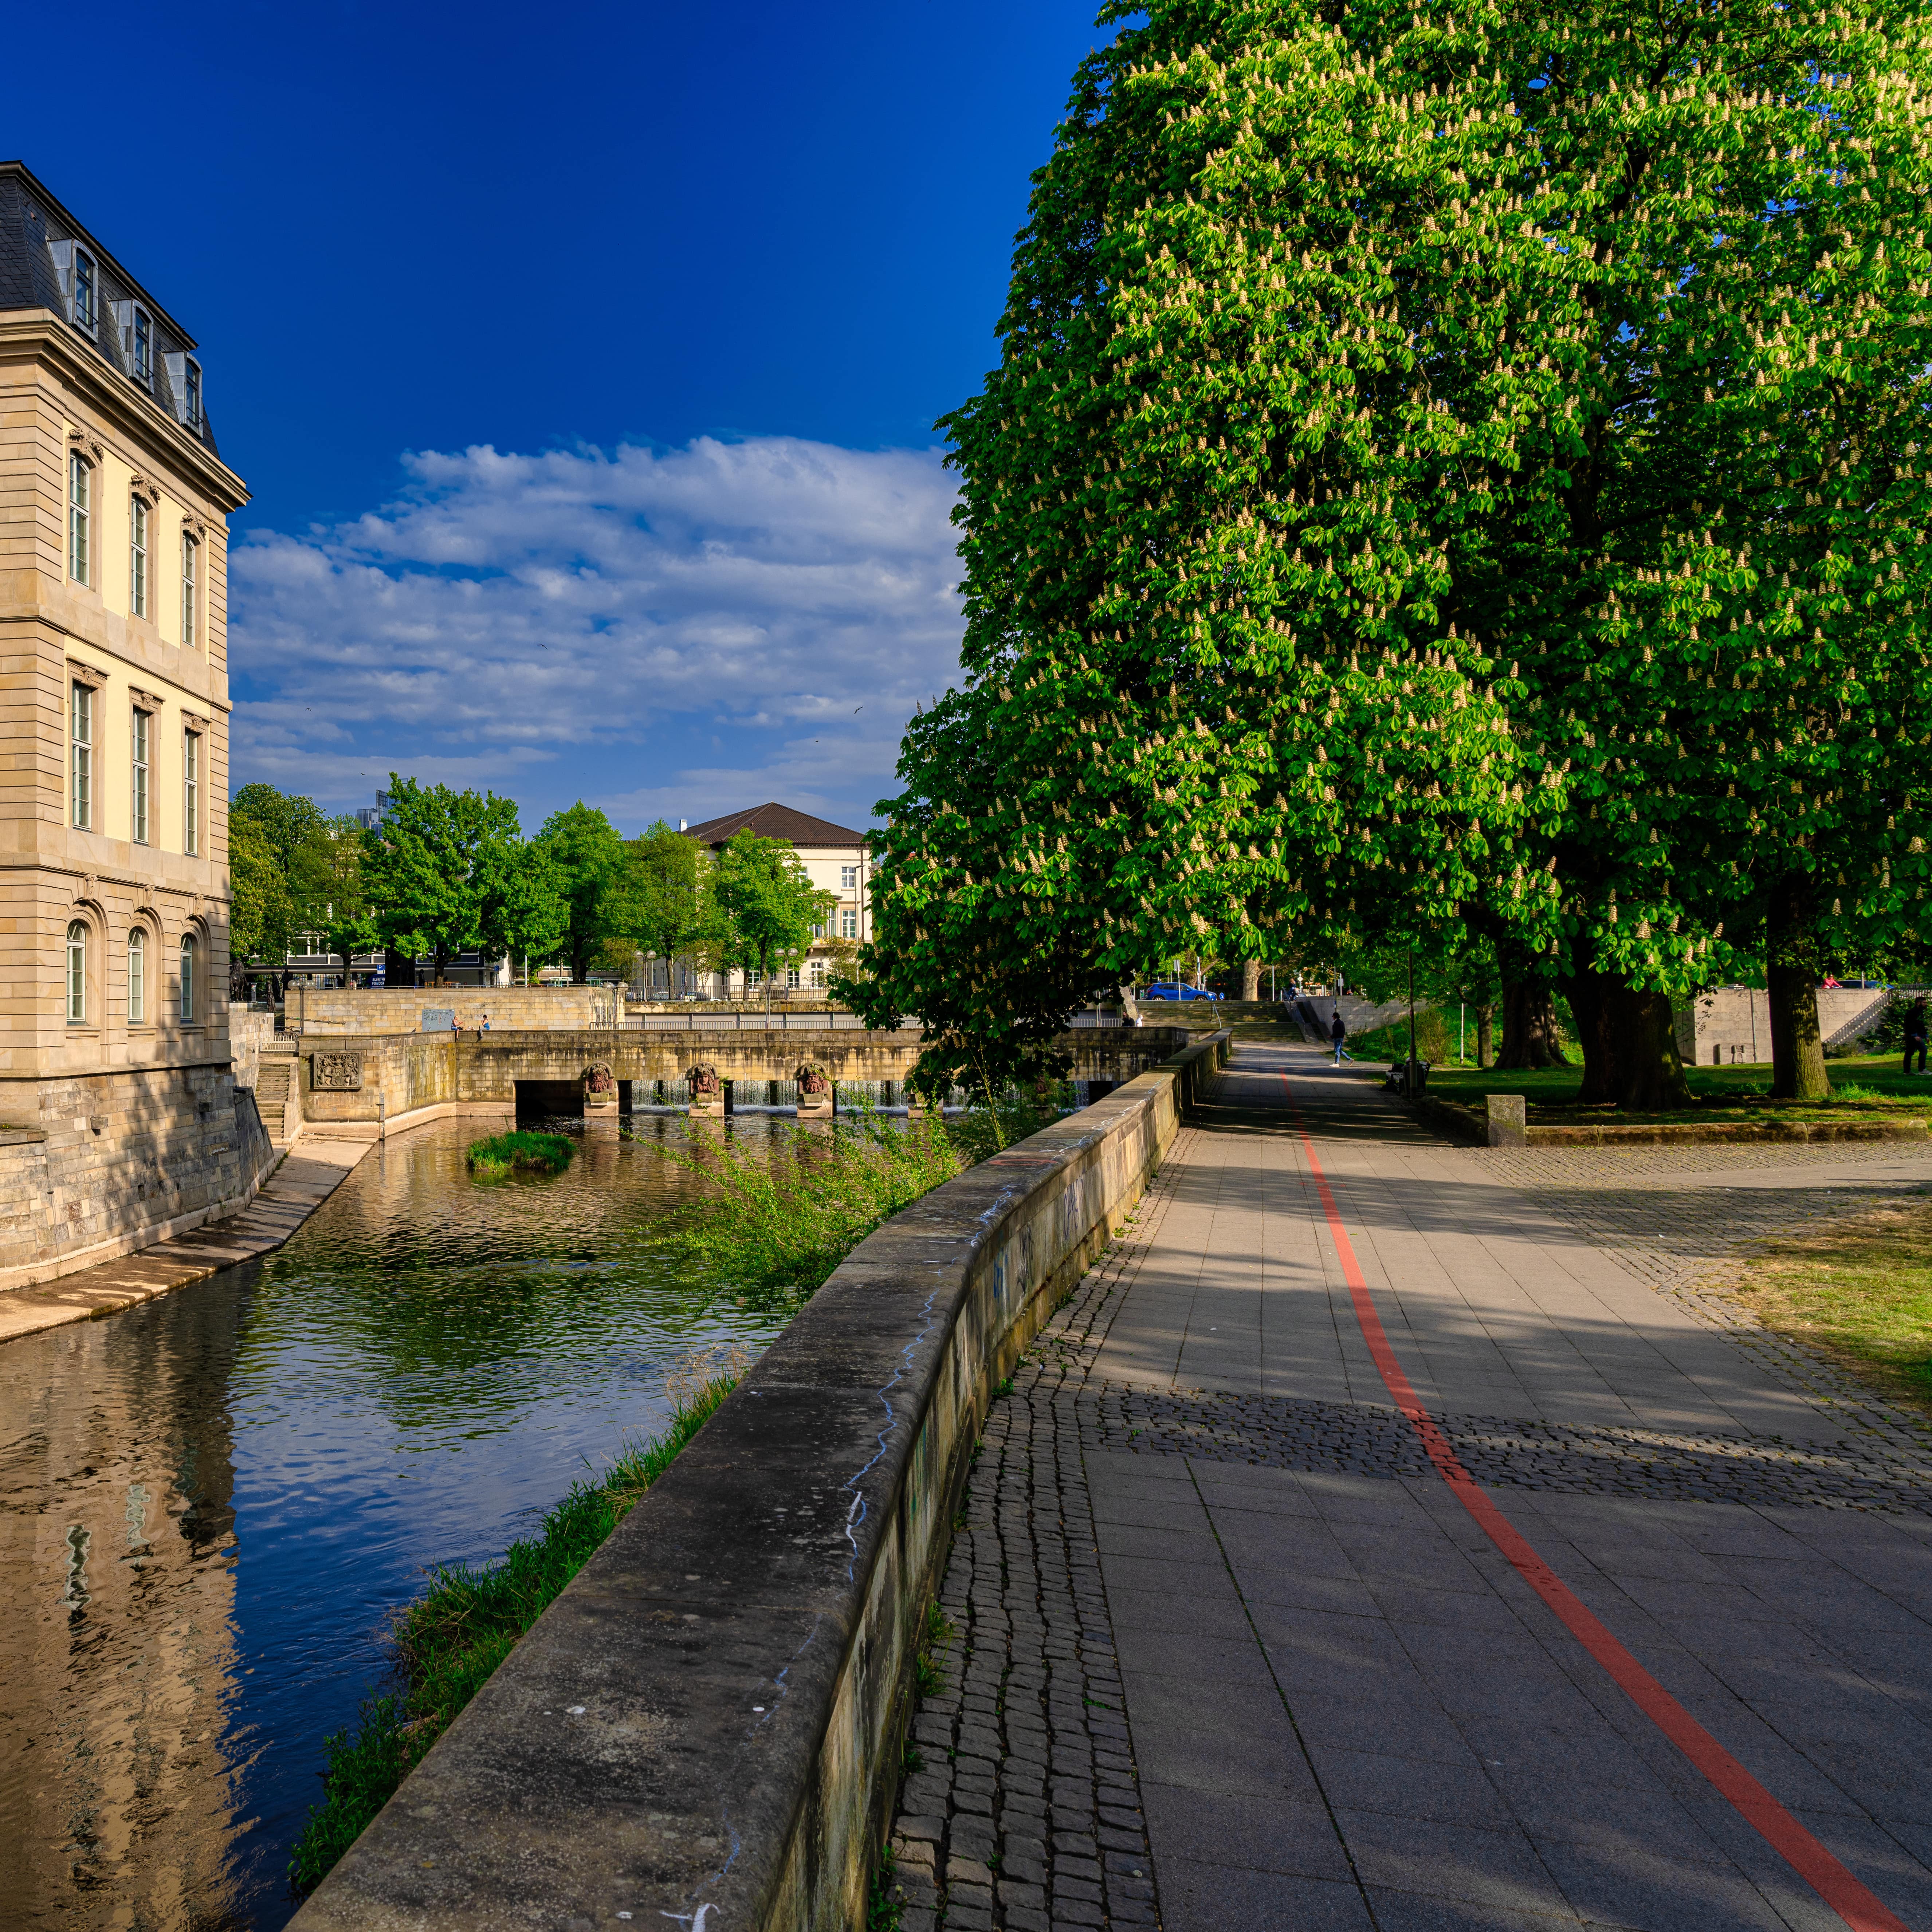 An der Promenade am Flussufer verläuft der Rote faden, links der Fluss und der Landtag.